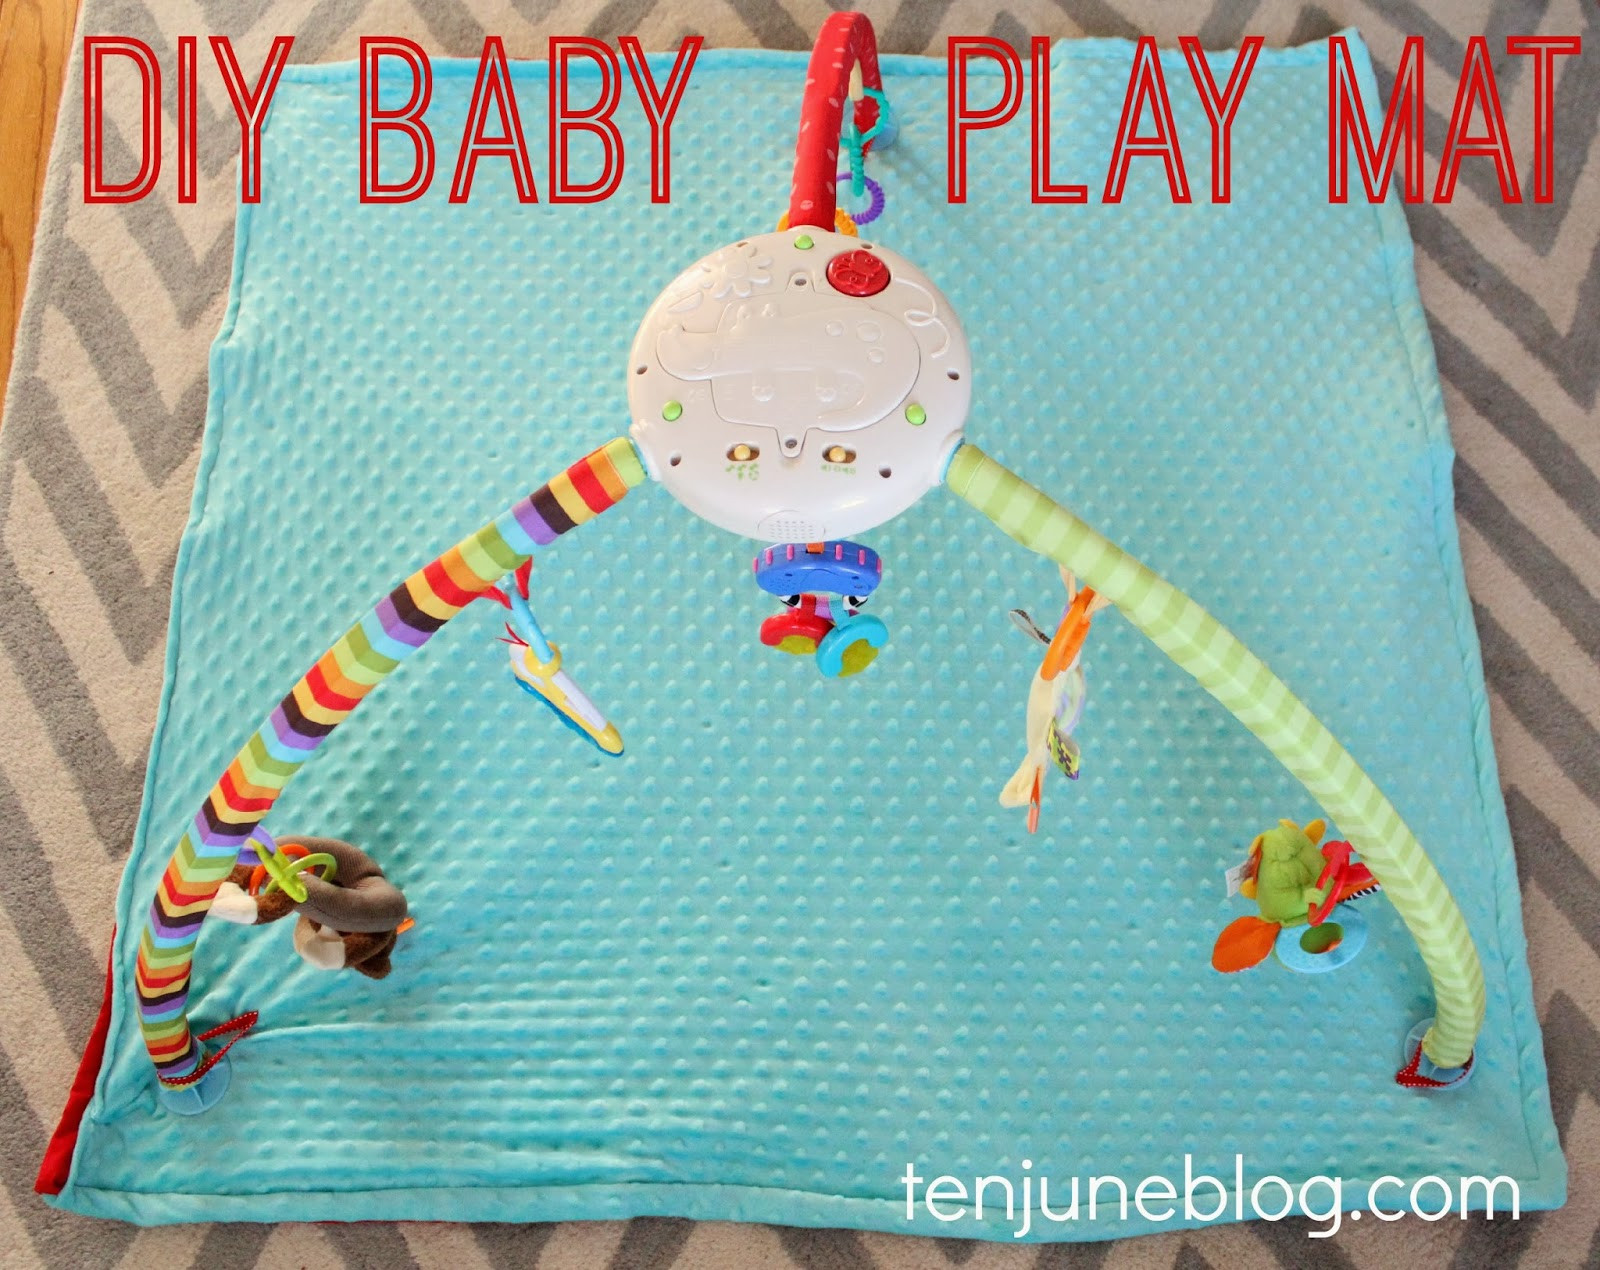 DIY Baby Play Mat
 Ten June DIY Baby Play Mat Sewing Tutorial